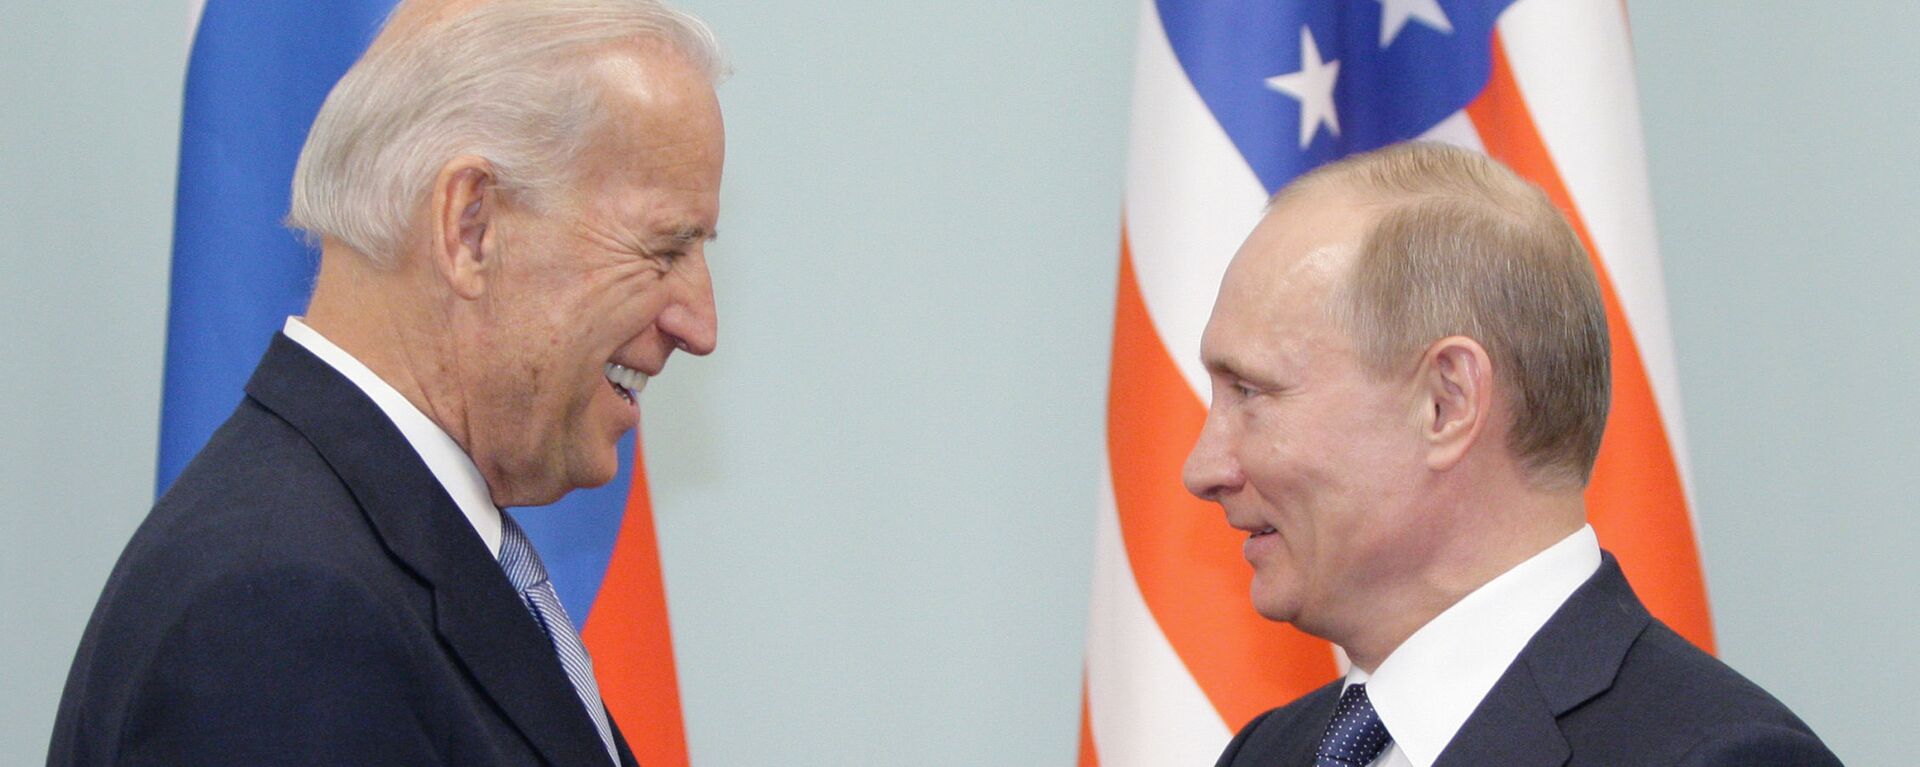 Встреча Владимира Путина с Джозефом Байденом в Москве - Sputnik Узбекистан, 1920, 25.05.2021